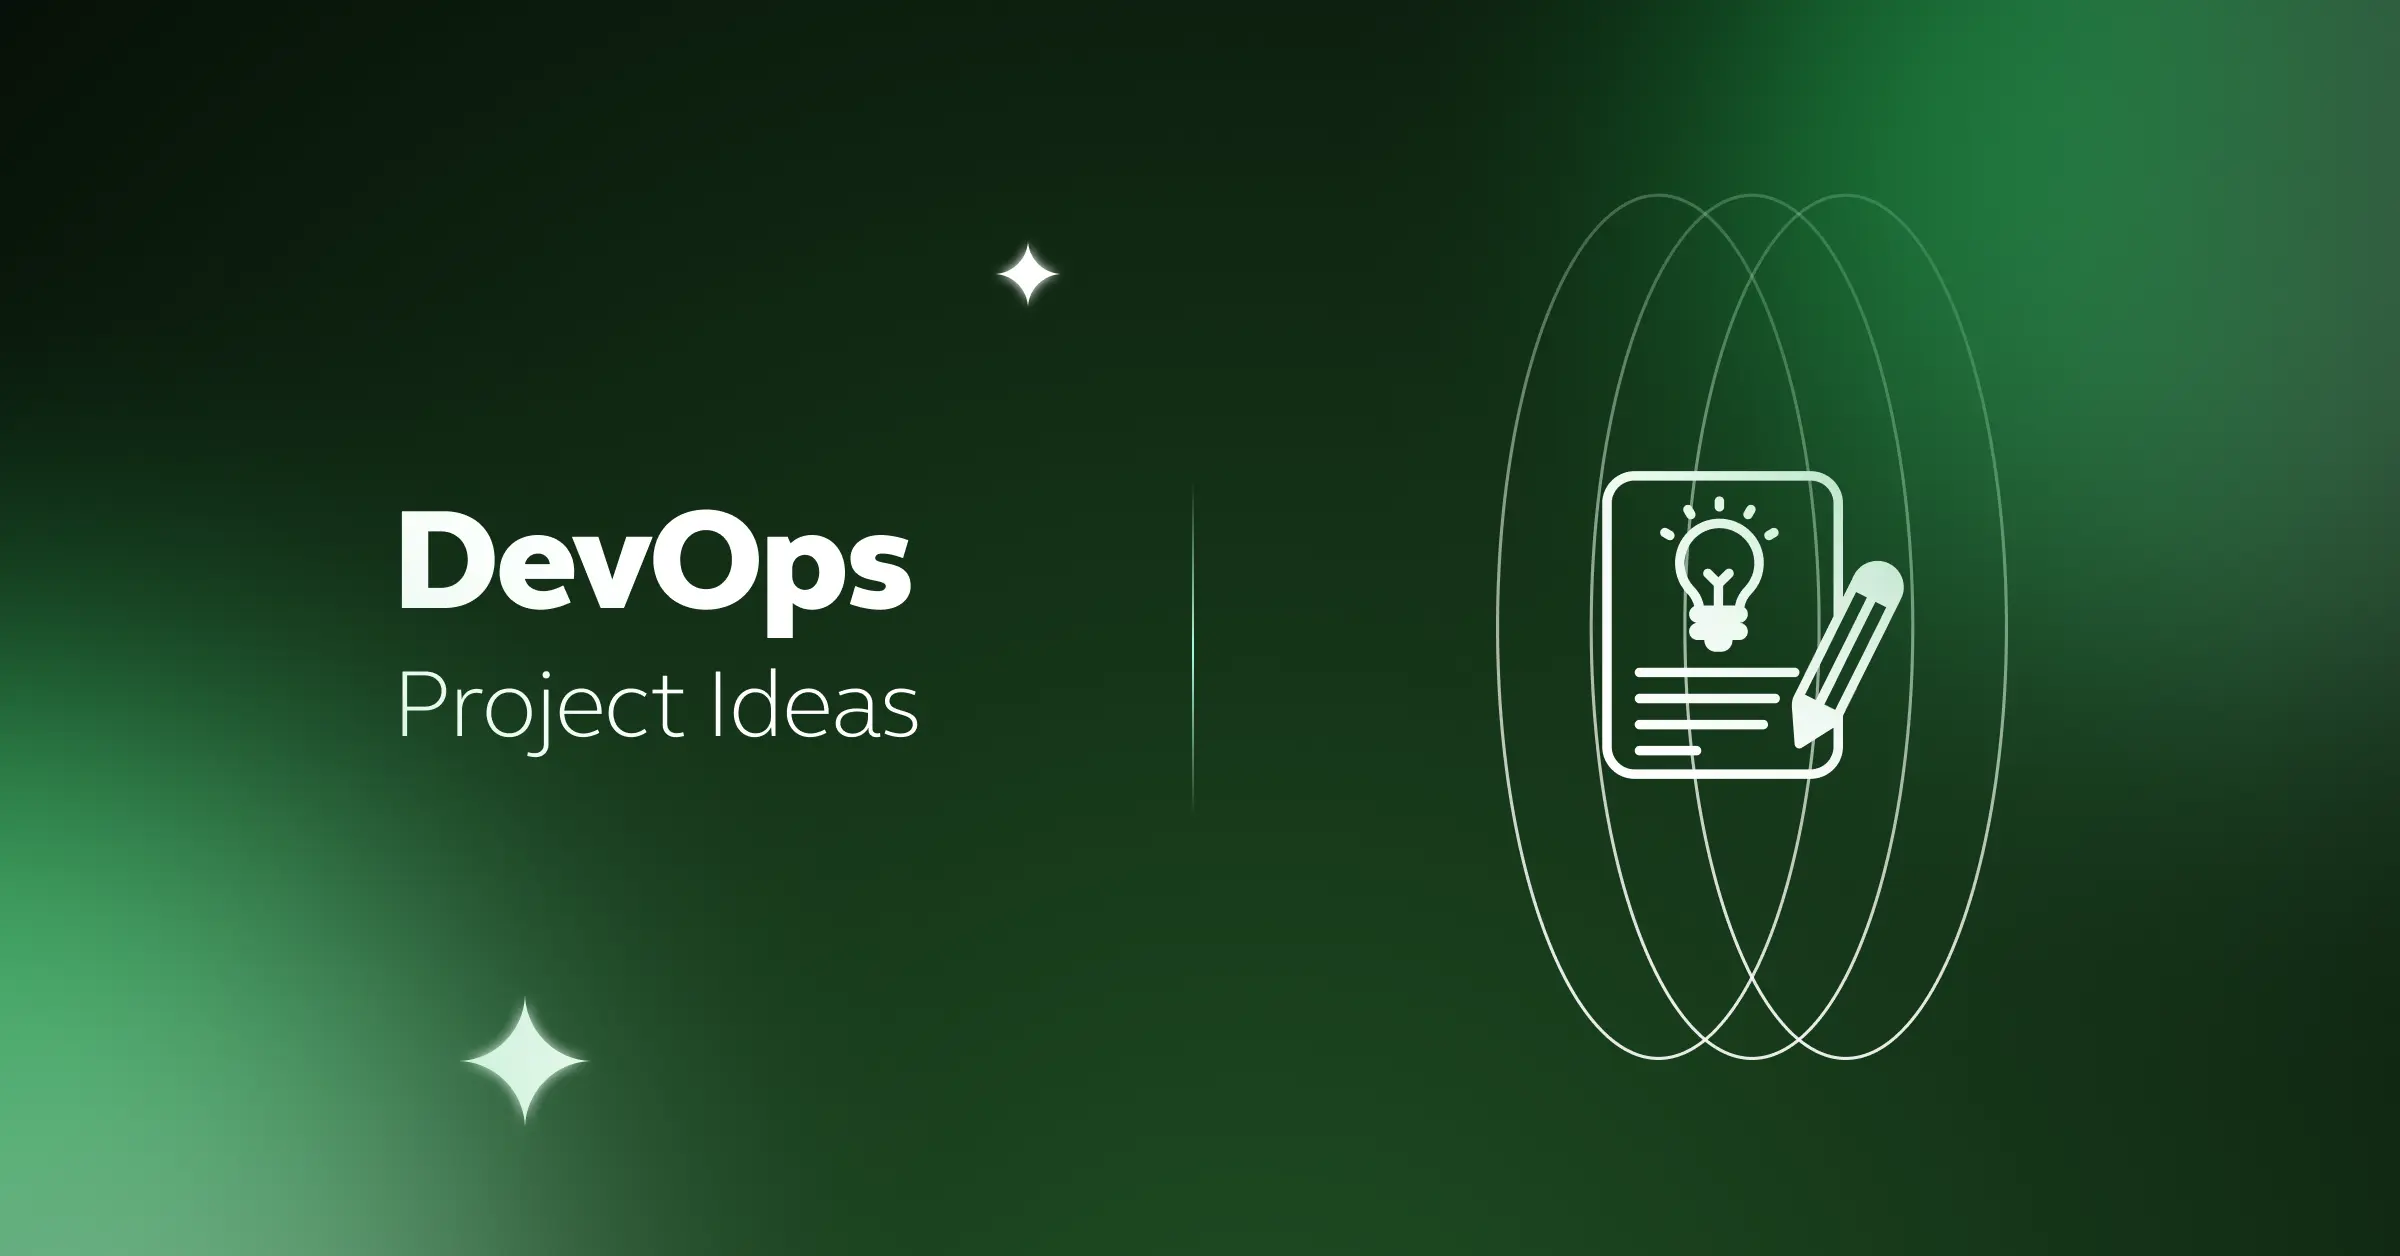 DevOps Project Ideas